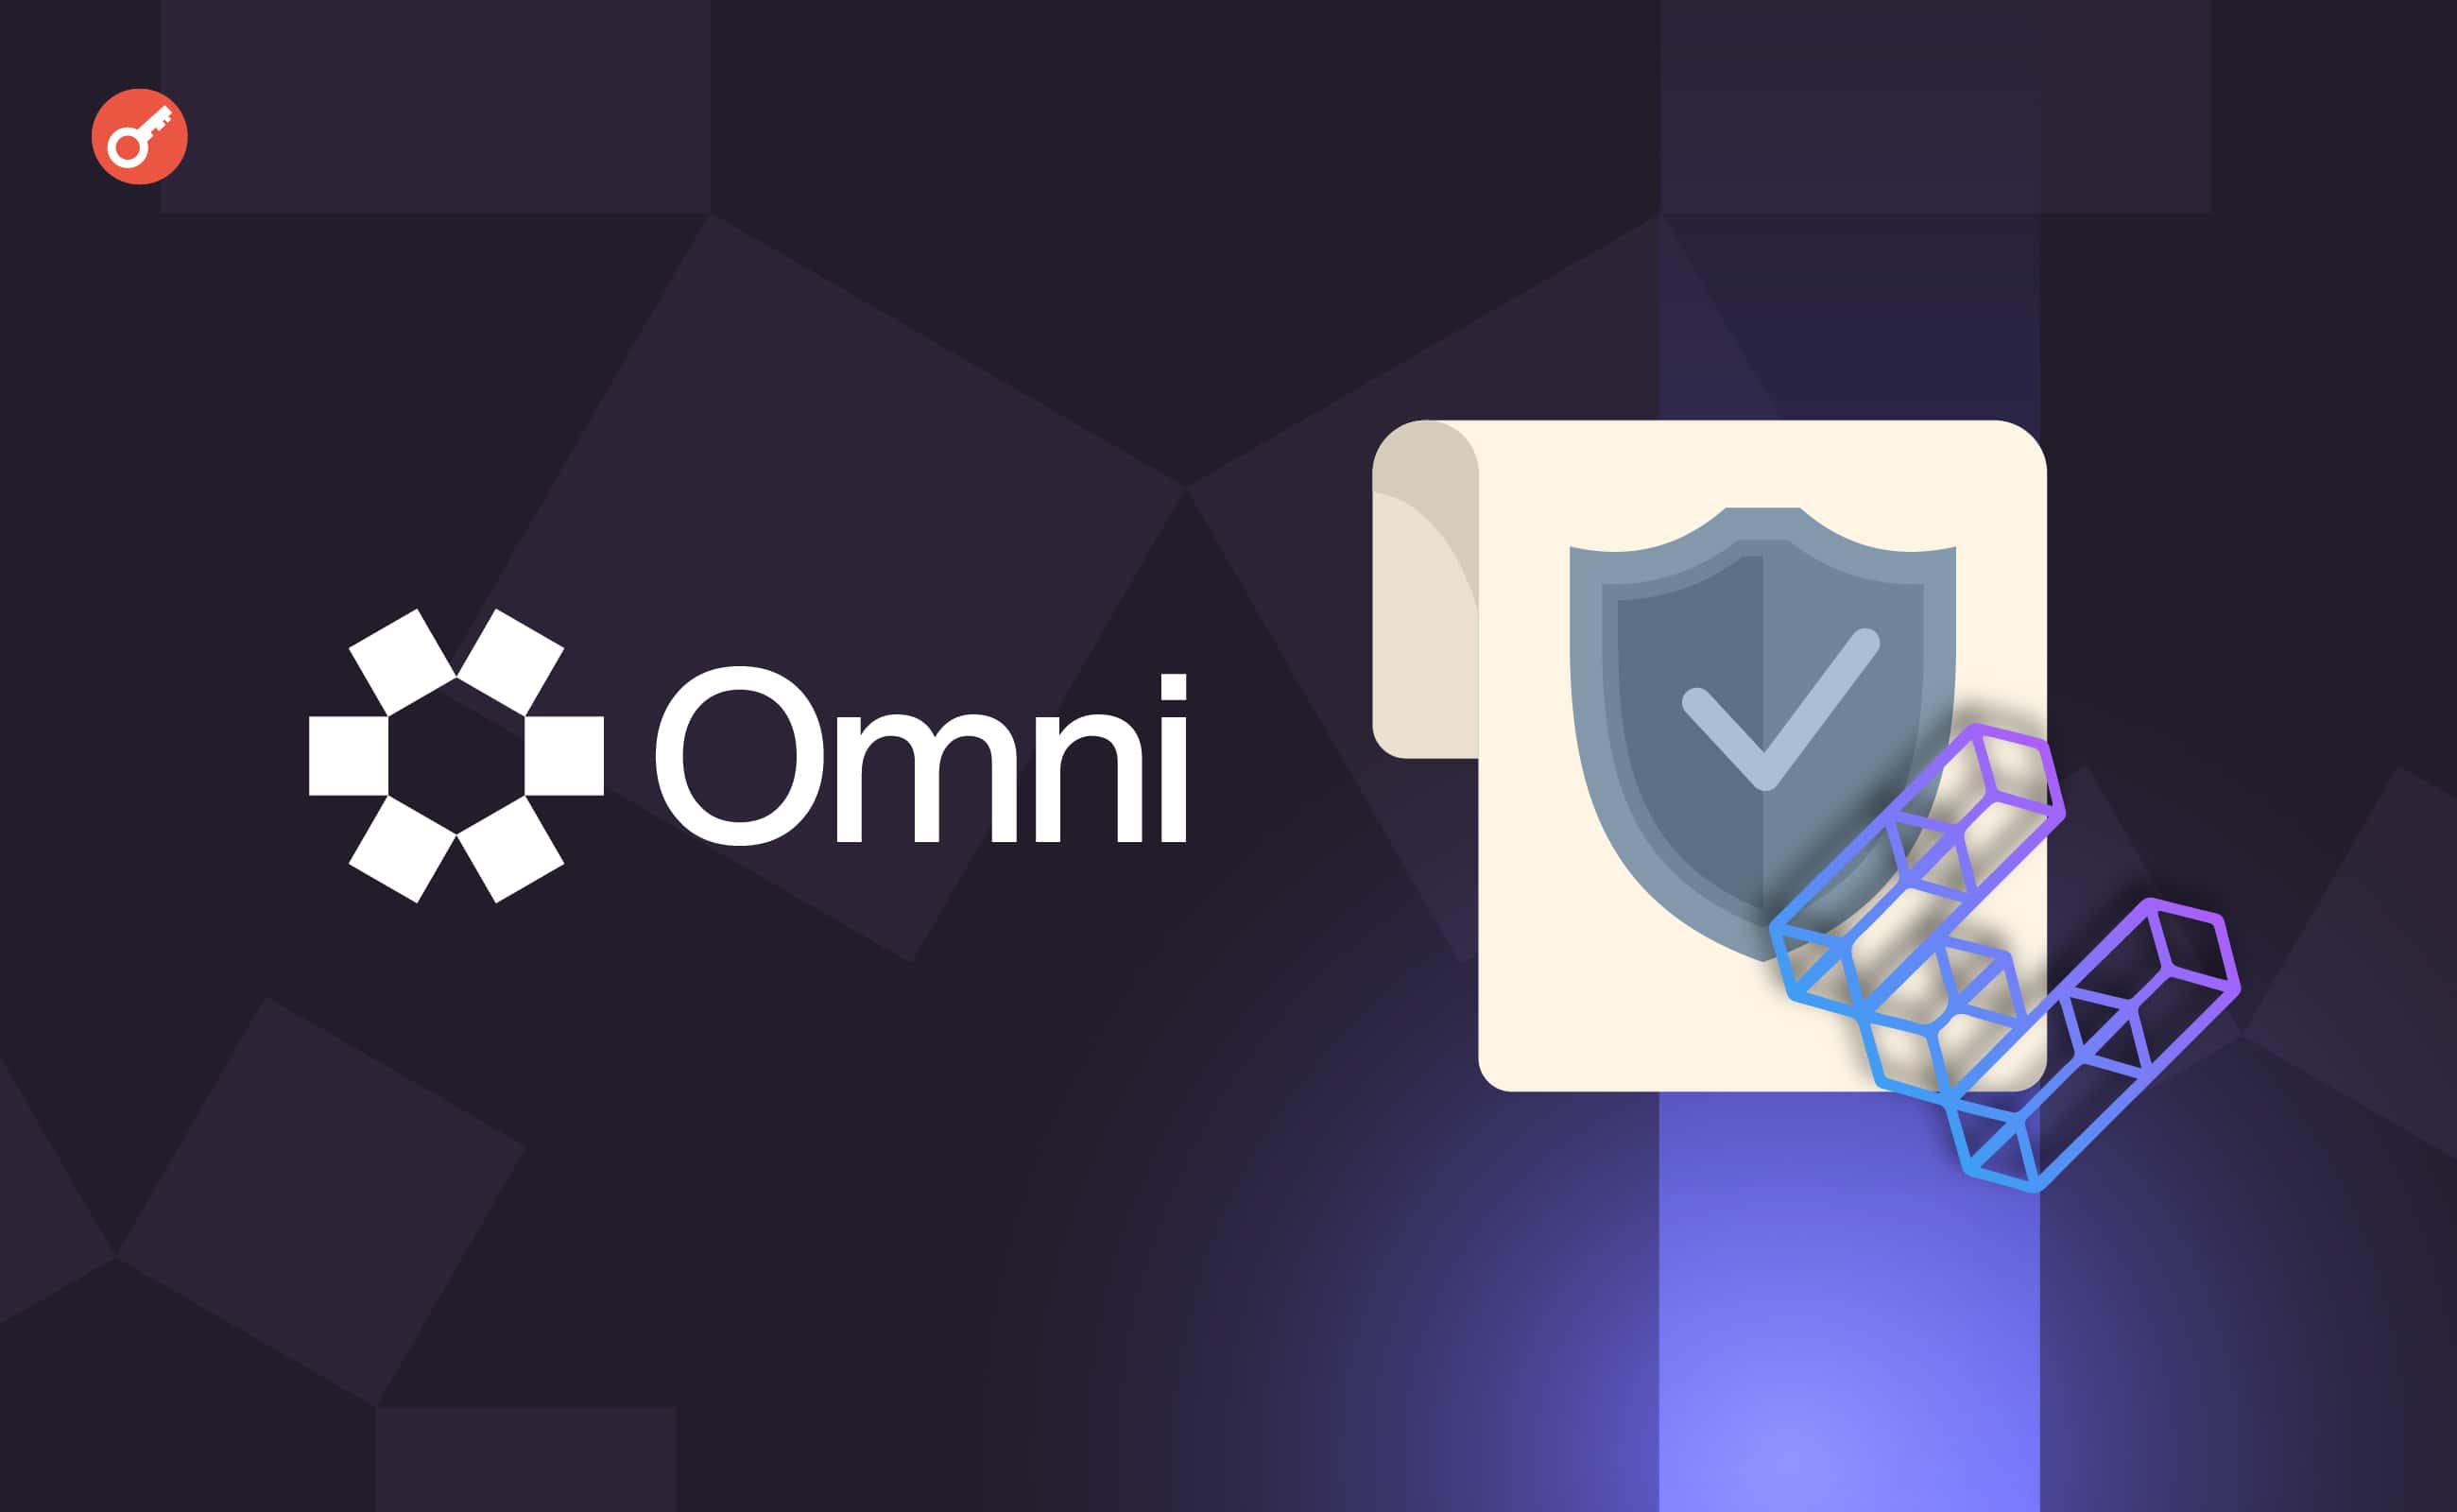 Omni Network заключила соглашение о безопасности с Ether.Fi на $600 млн. Заглавный коллаж новости.